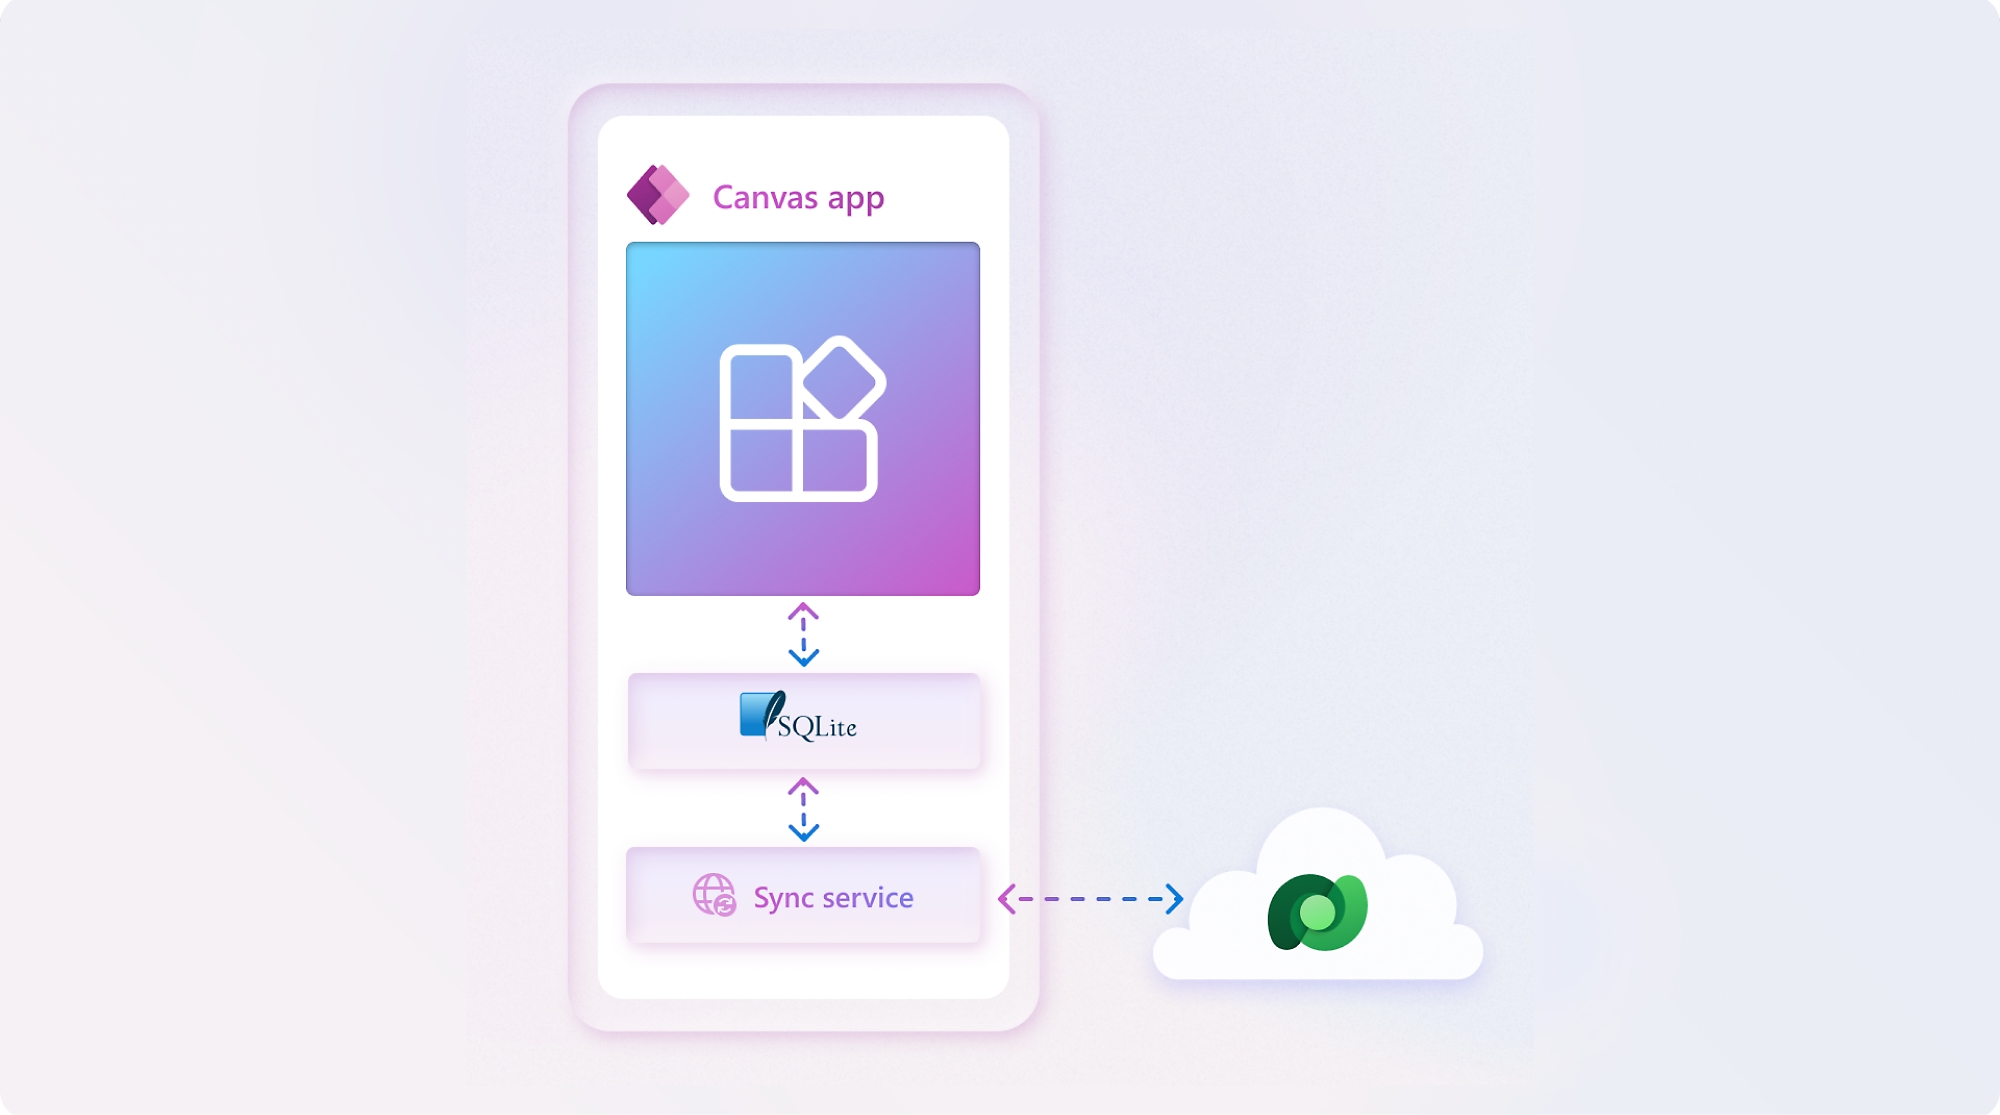 Ilustración de una interfaz móvil con la "aplicación de lienzo" que se muestra en la pantalla, junto con iconos para sqlite